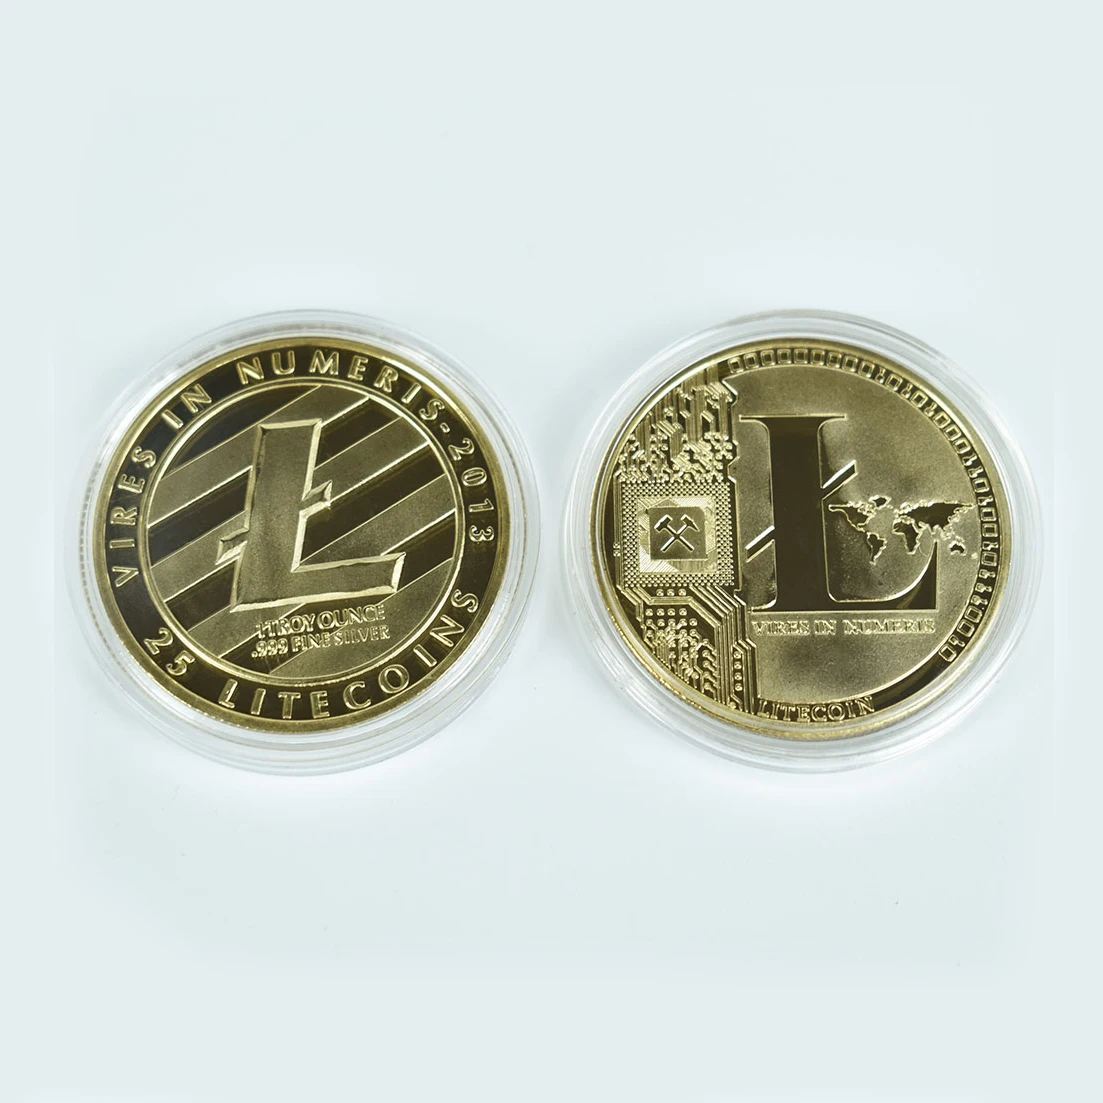 Coin валюта круглосуточный обмен валюты астане